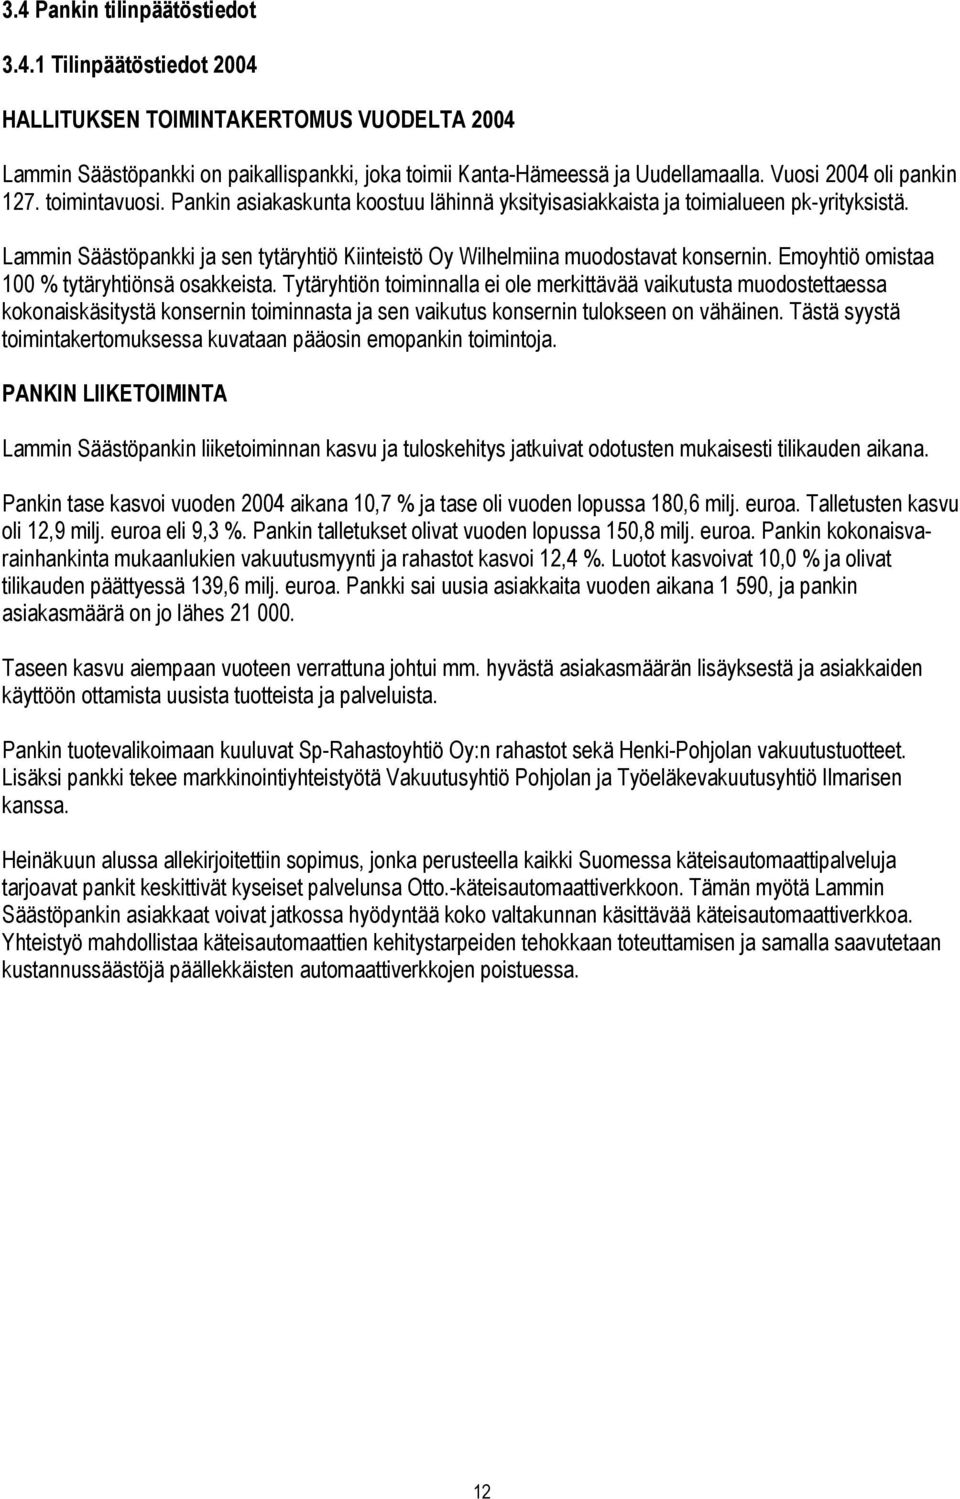 Lammin Säästöpankki ja sen tytäryhtiö Kiinteistö Oy Wilhelmiina muodostavat konsernin. Emoyhtiö omistaa 100 % tytäryhtiönsä osakkeista.